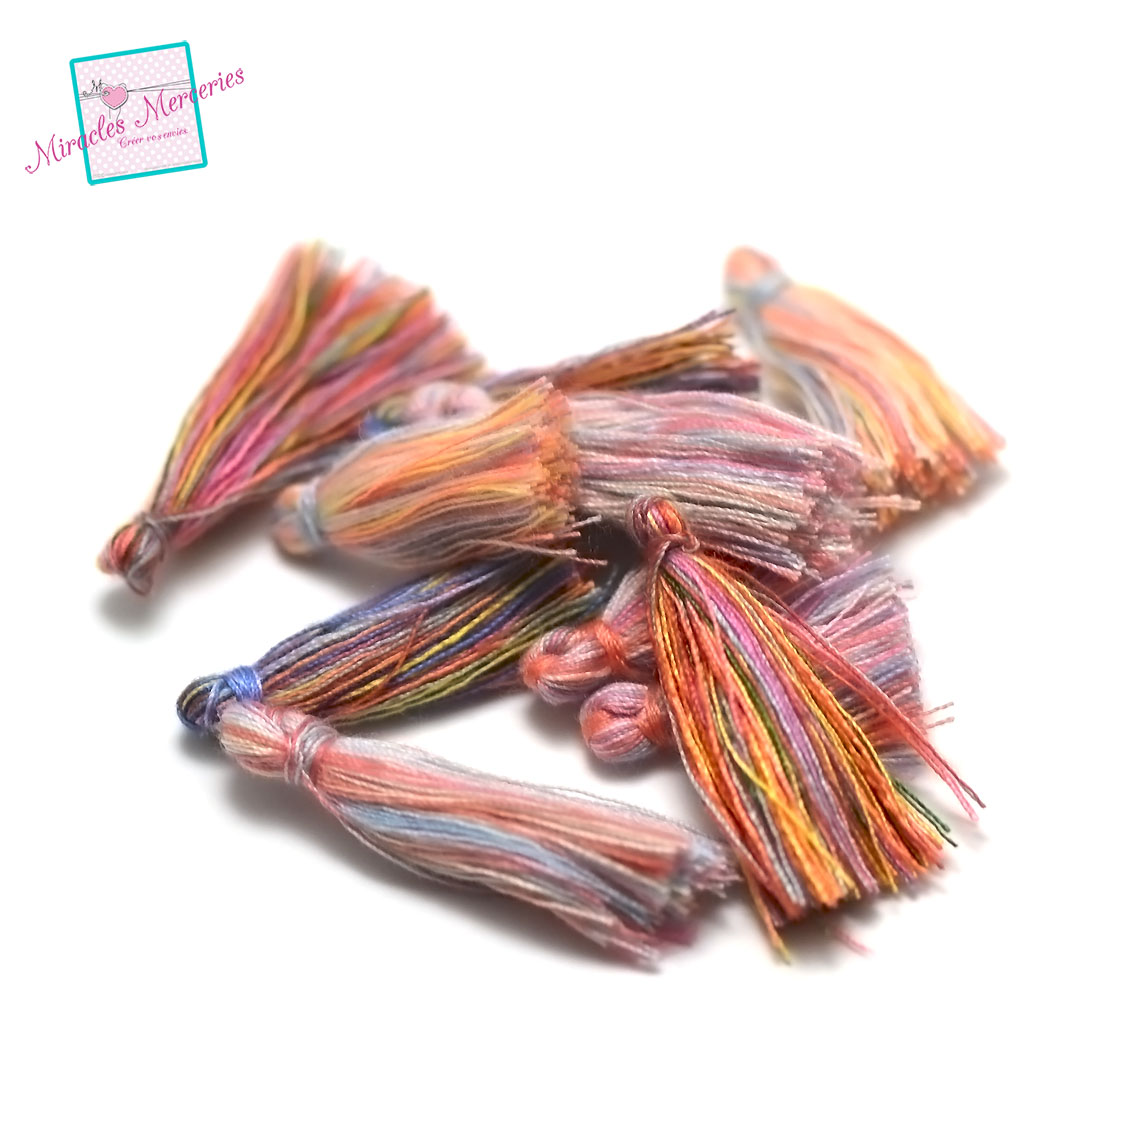 10 pompons en fil de coton multicolore 25-30 mm,assortiment de couleurs